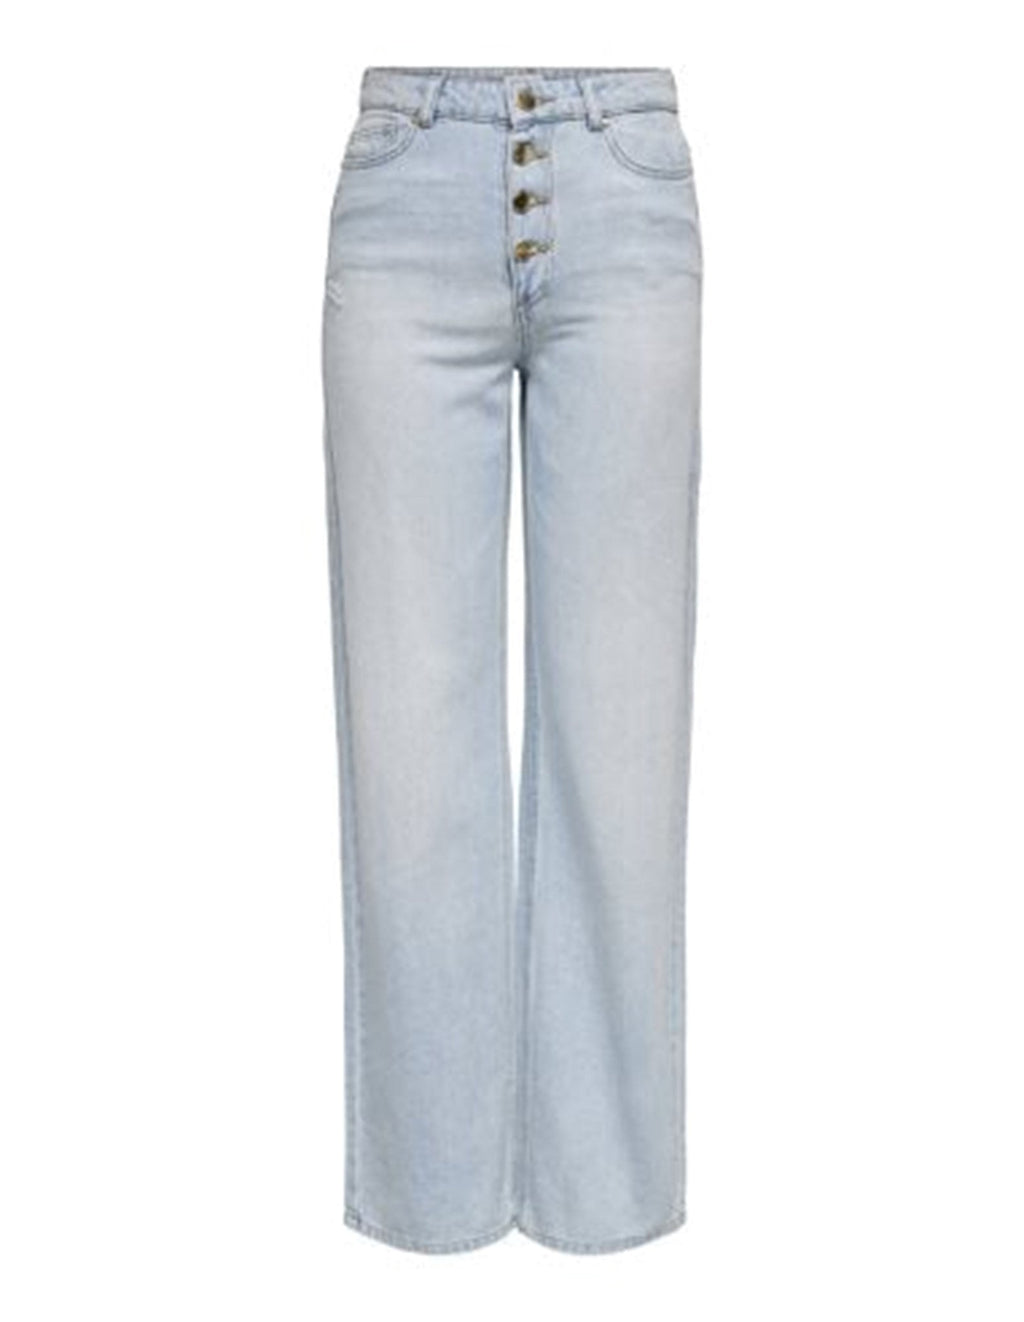 Šťavnaté džínsy (široká noha) - svetlá džínsová modrá